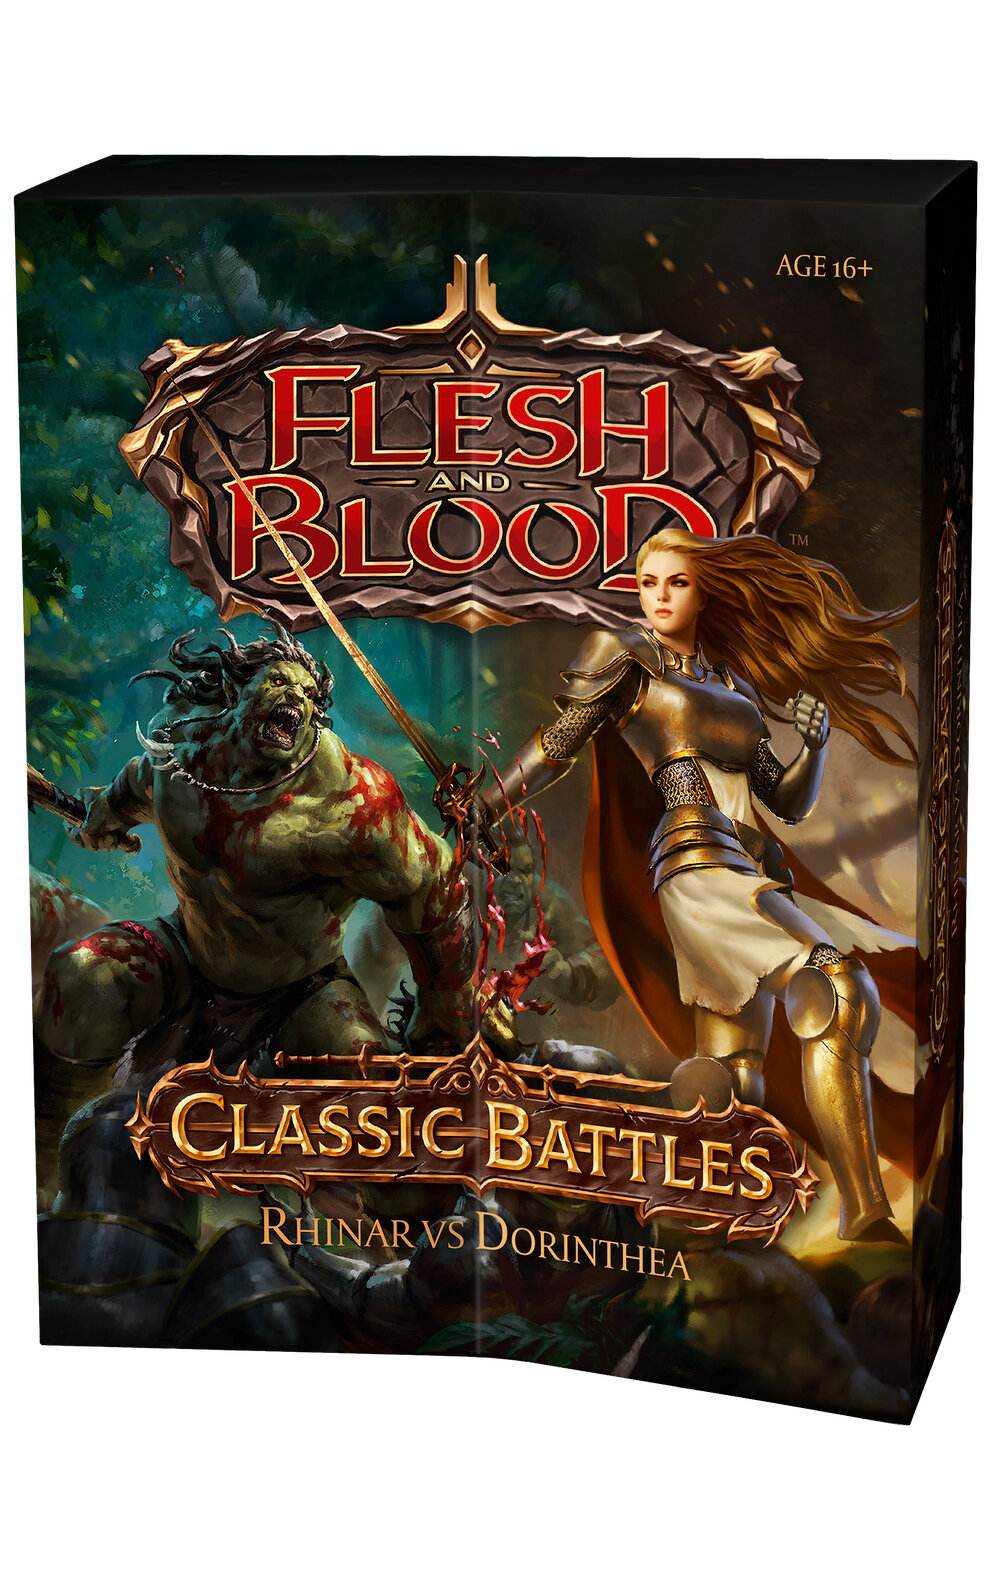 Flesh and Blood TCG: Коллекционный дуэльный набор издания Classic Battles Rhinar vs Dorinthea на английском языке